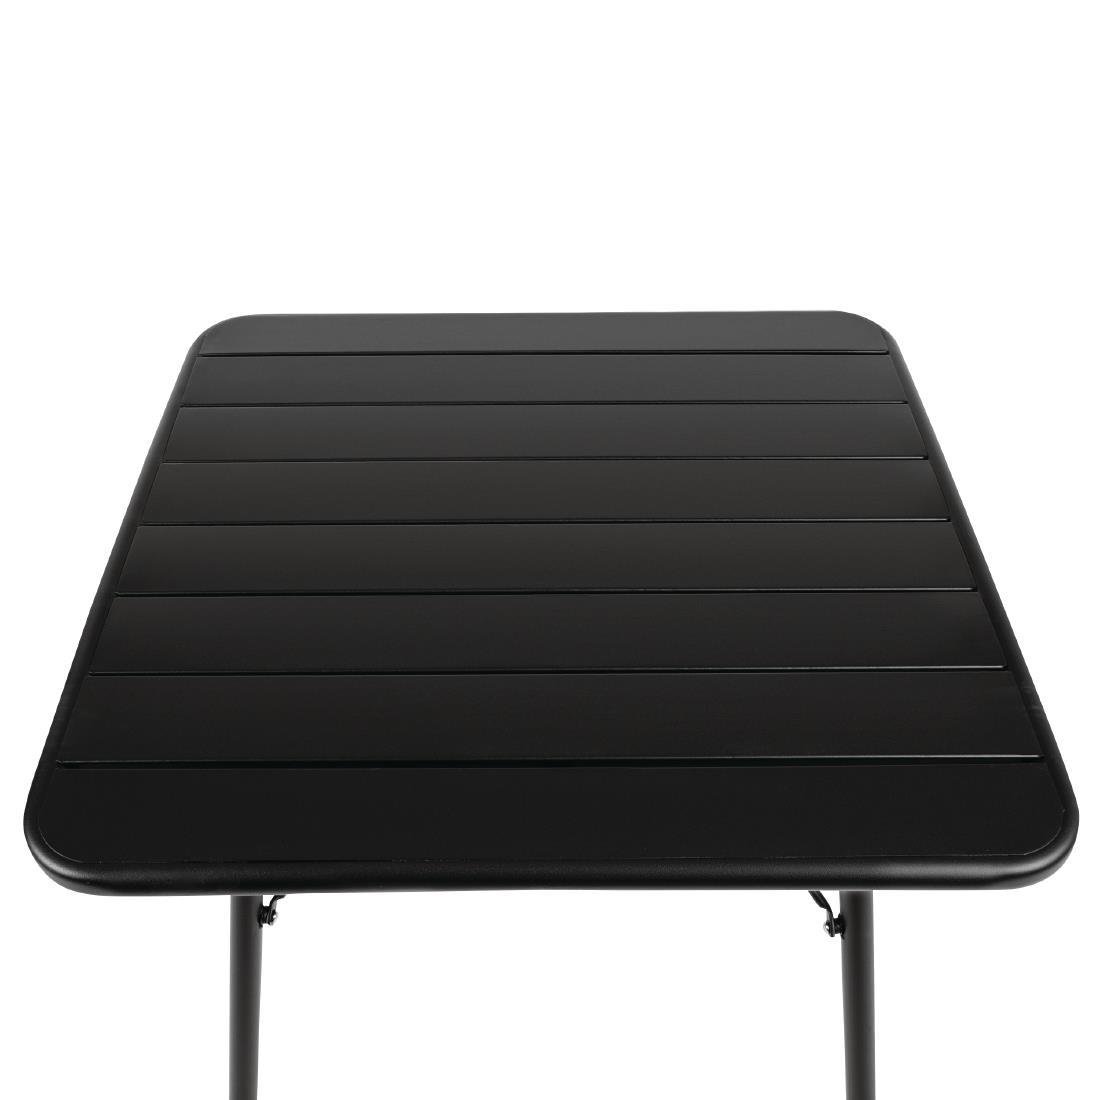 Bolero Square Slatted Steel Table Black 700mm - CS731  - 3